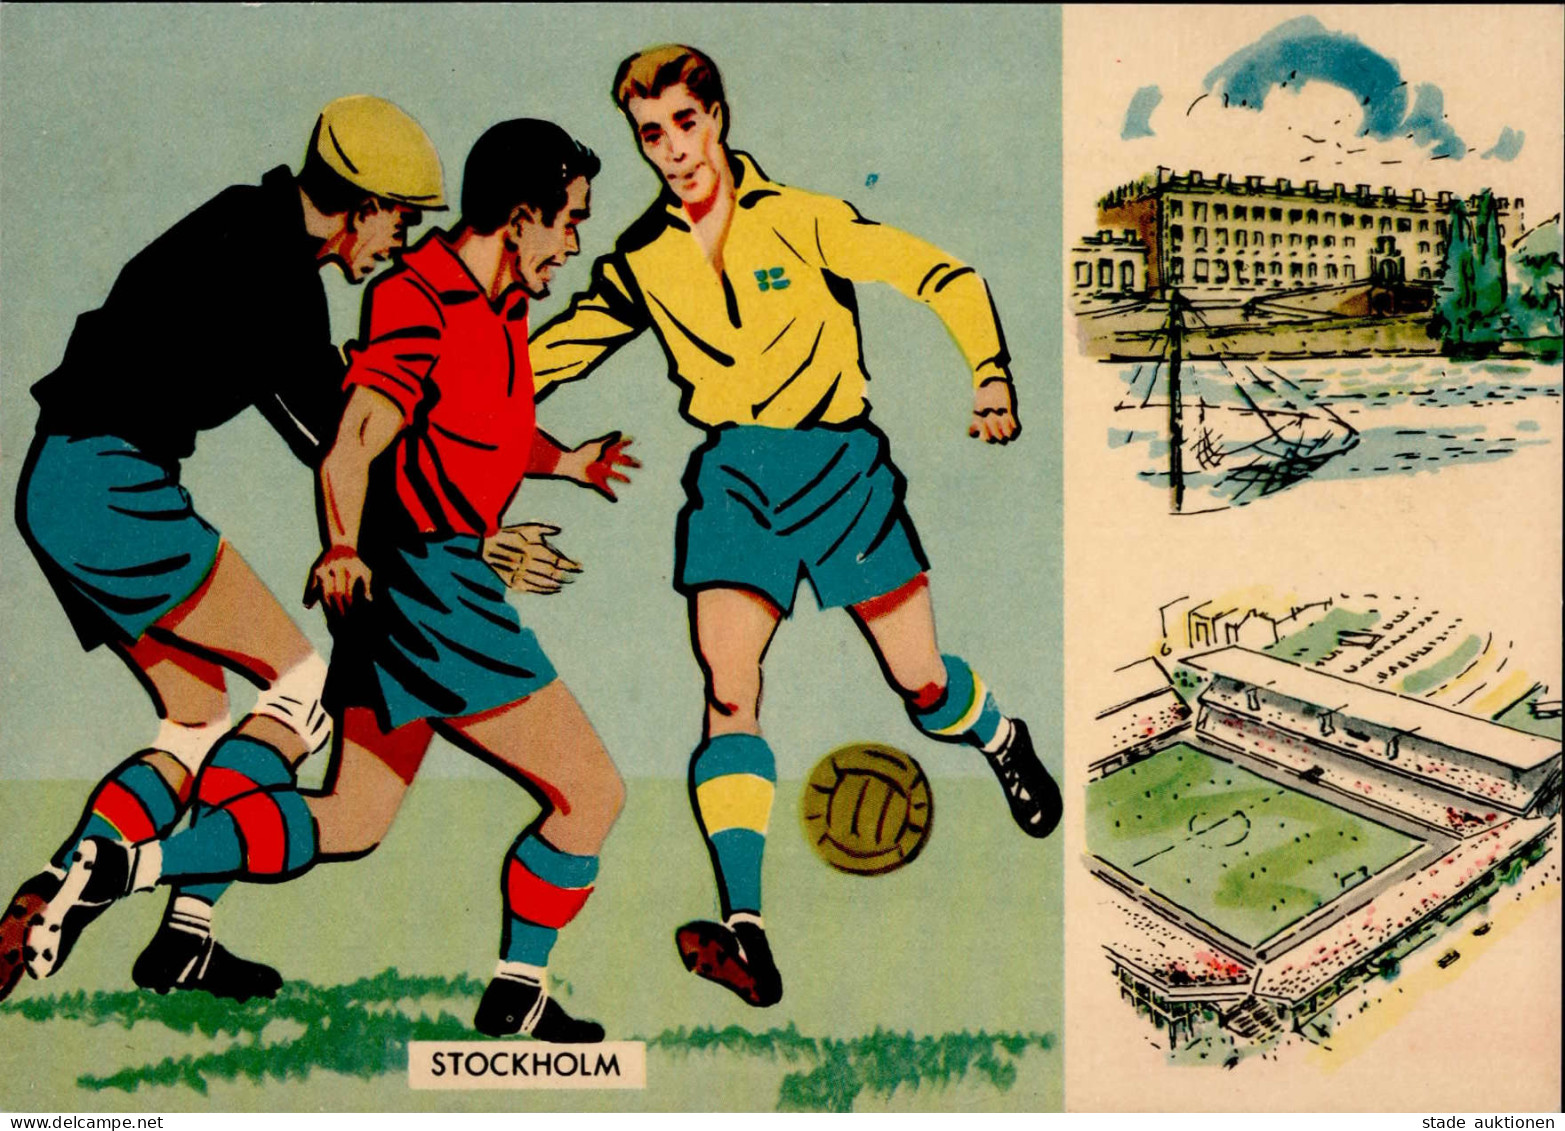 FUSSBALL - STOCKHOLM - FUSSBALL-WELTMEISTERSCHAFT 1958 FRANKREICH-BRASILIEN S-o I - Fussball